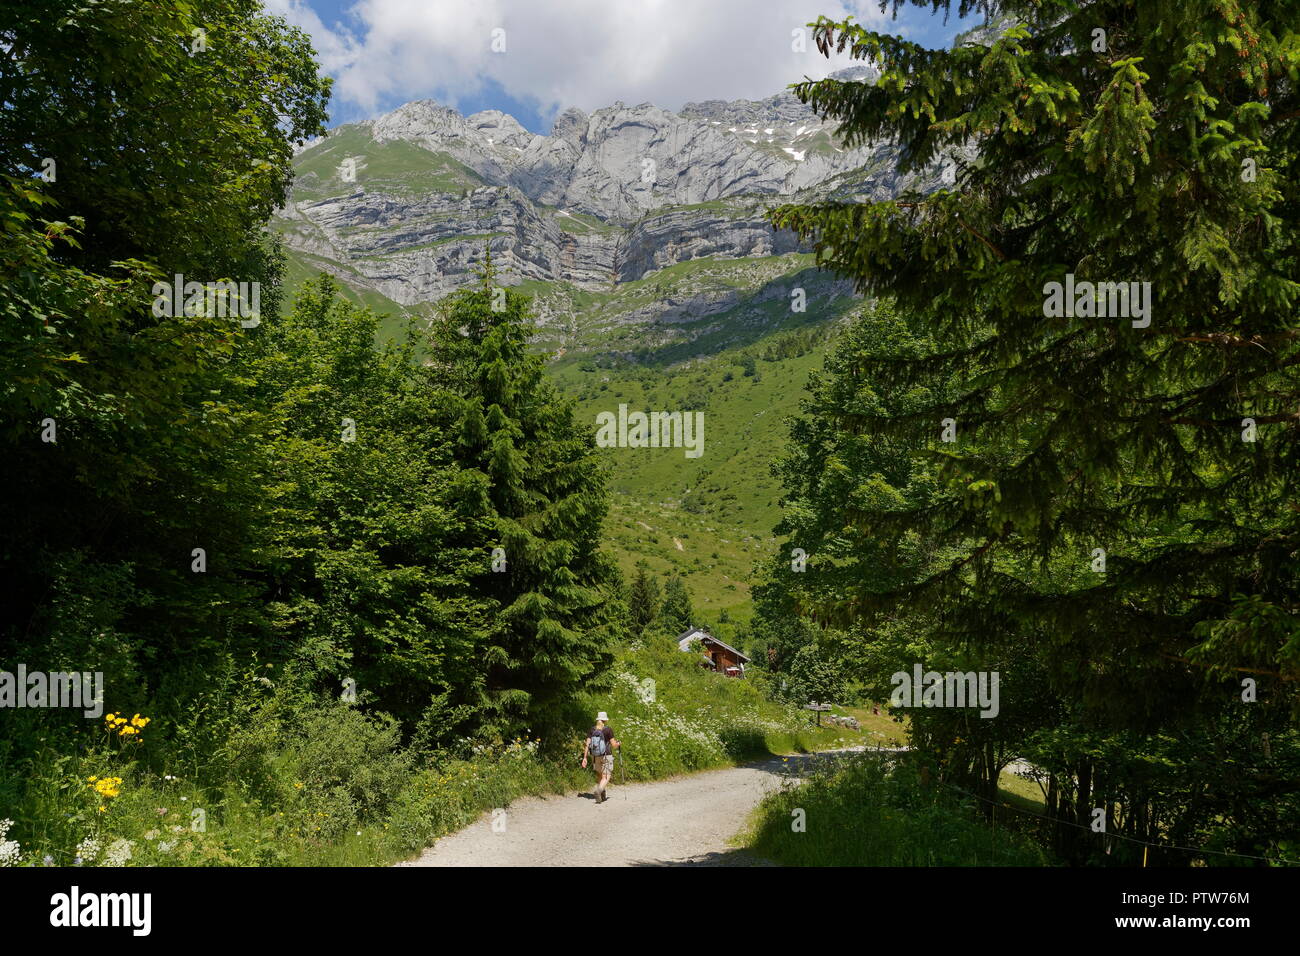 Escursionista femmina a camminare verso un lontano ristorante sull'off road tracks nelle valli delle Alpi francesi nr Montmin Francia Foto Stock